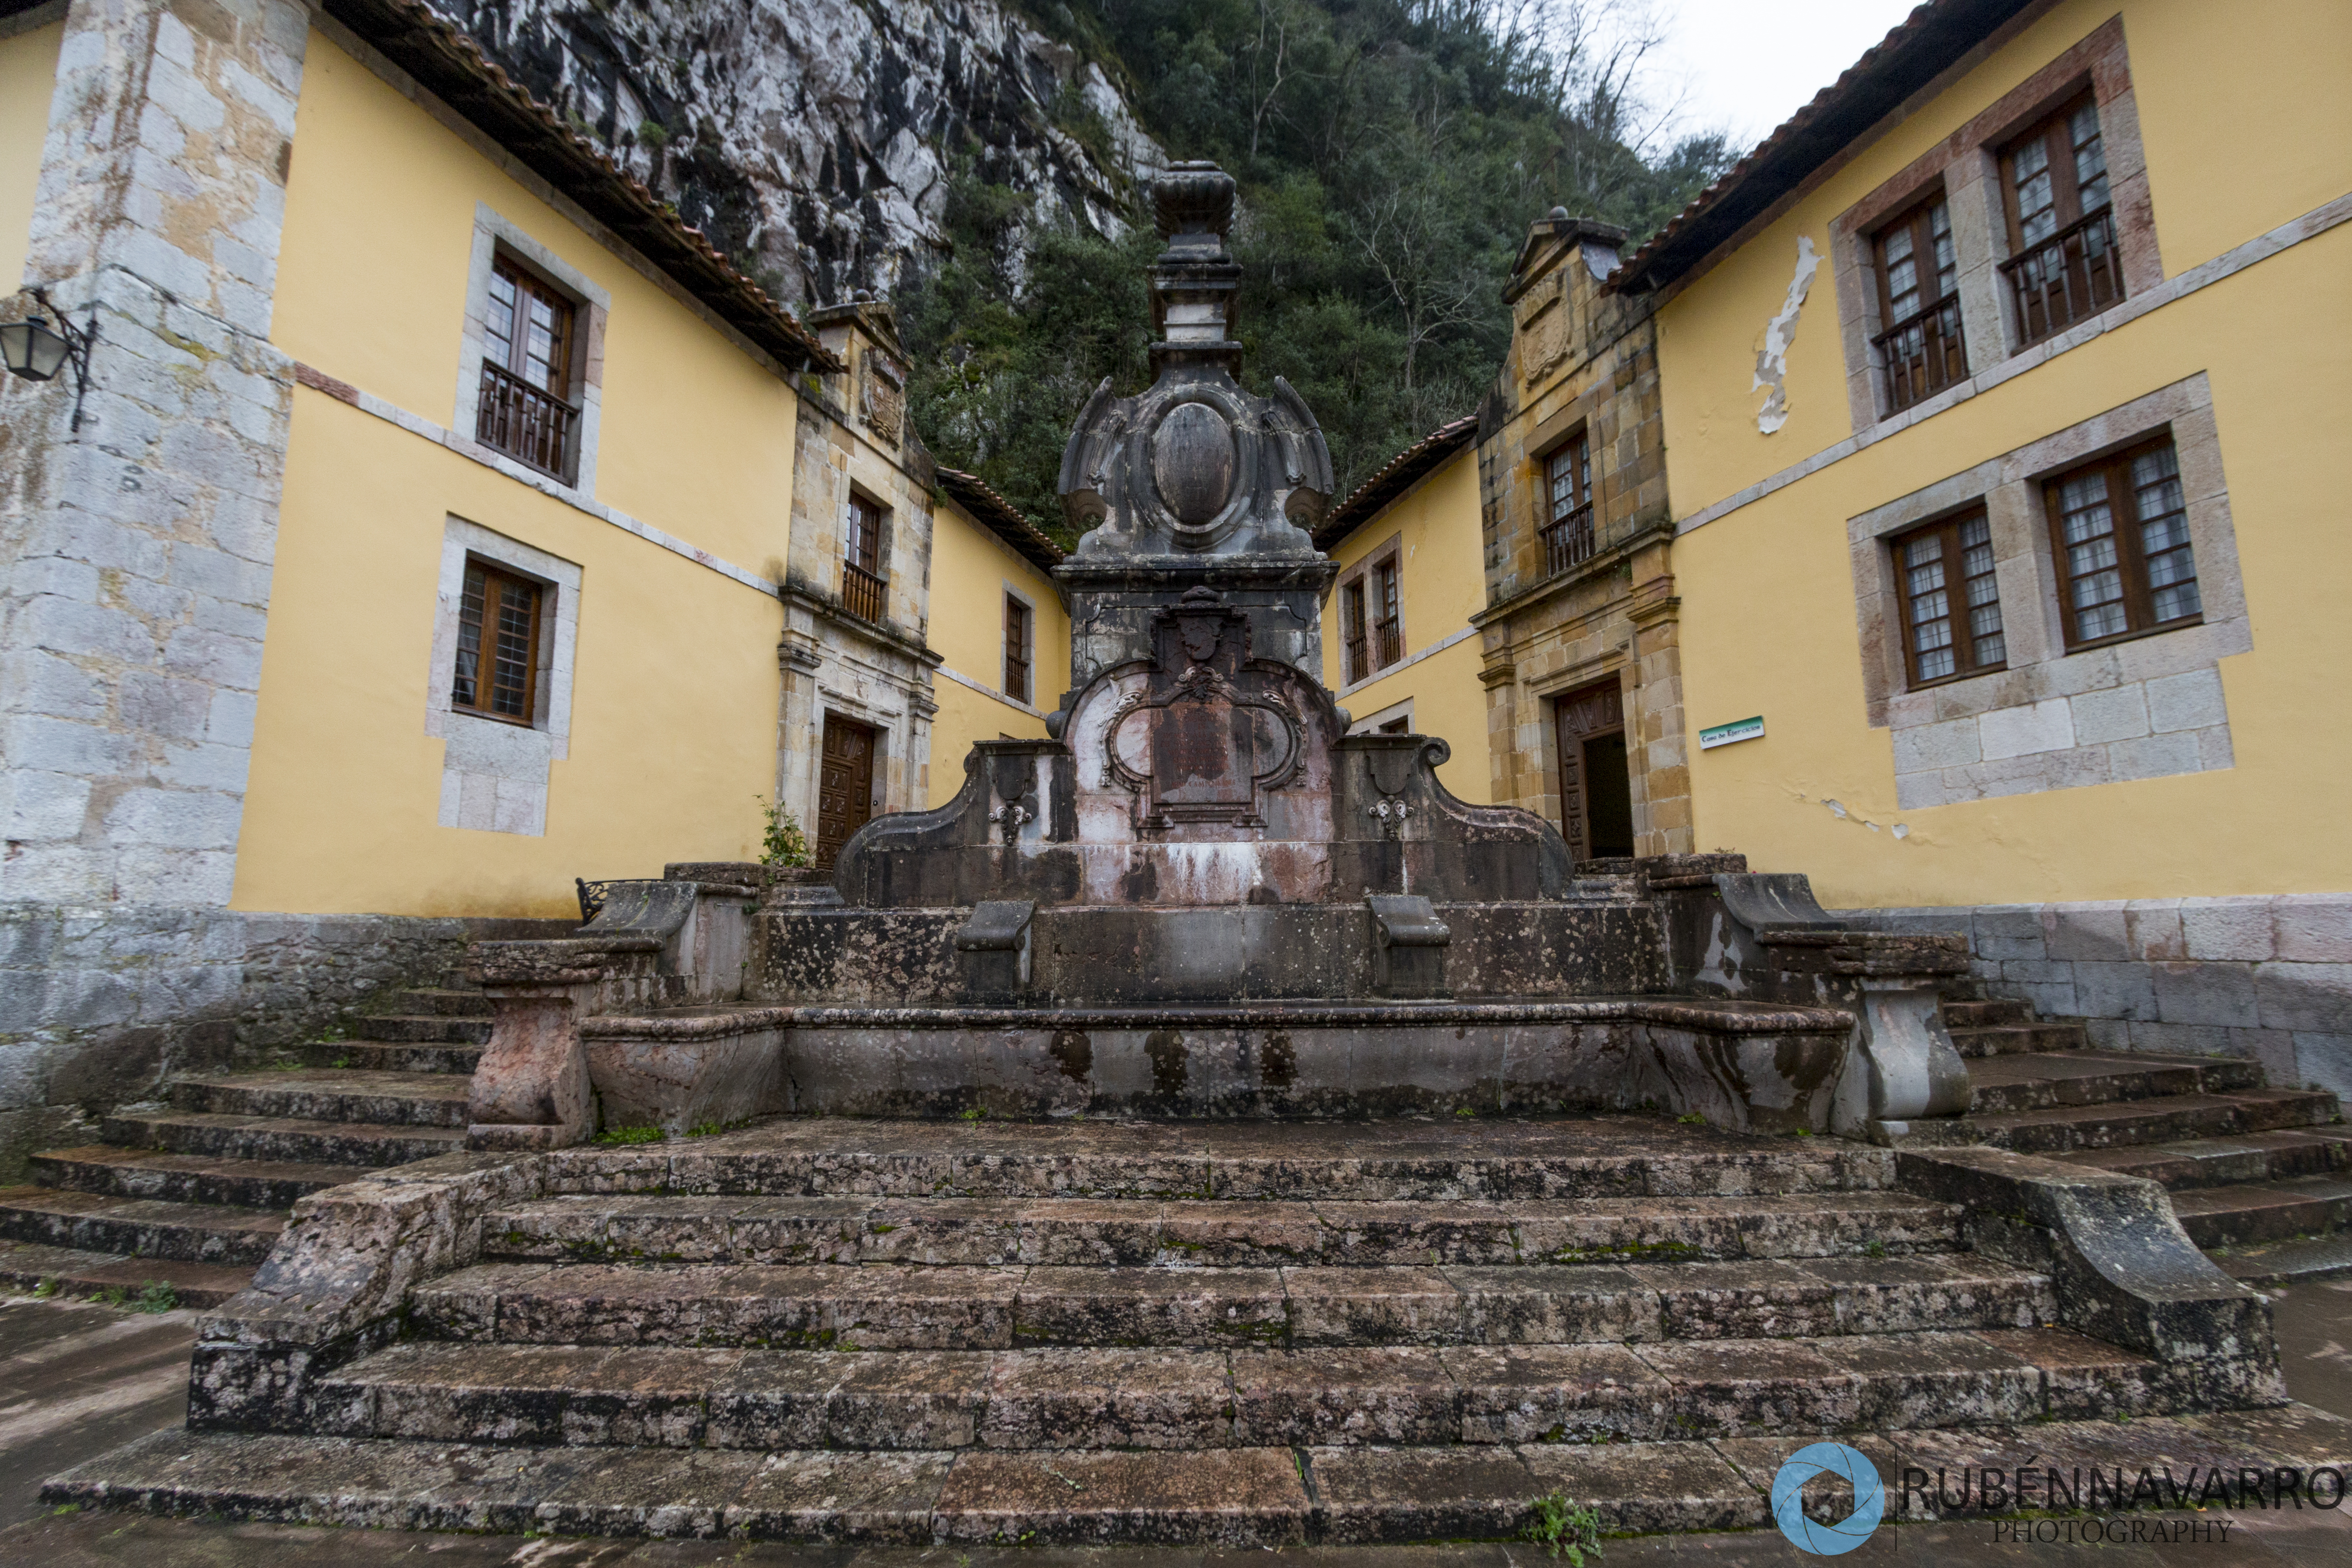 Visitar el santuario de Covadonga - Asturias